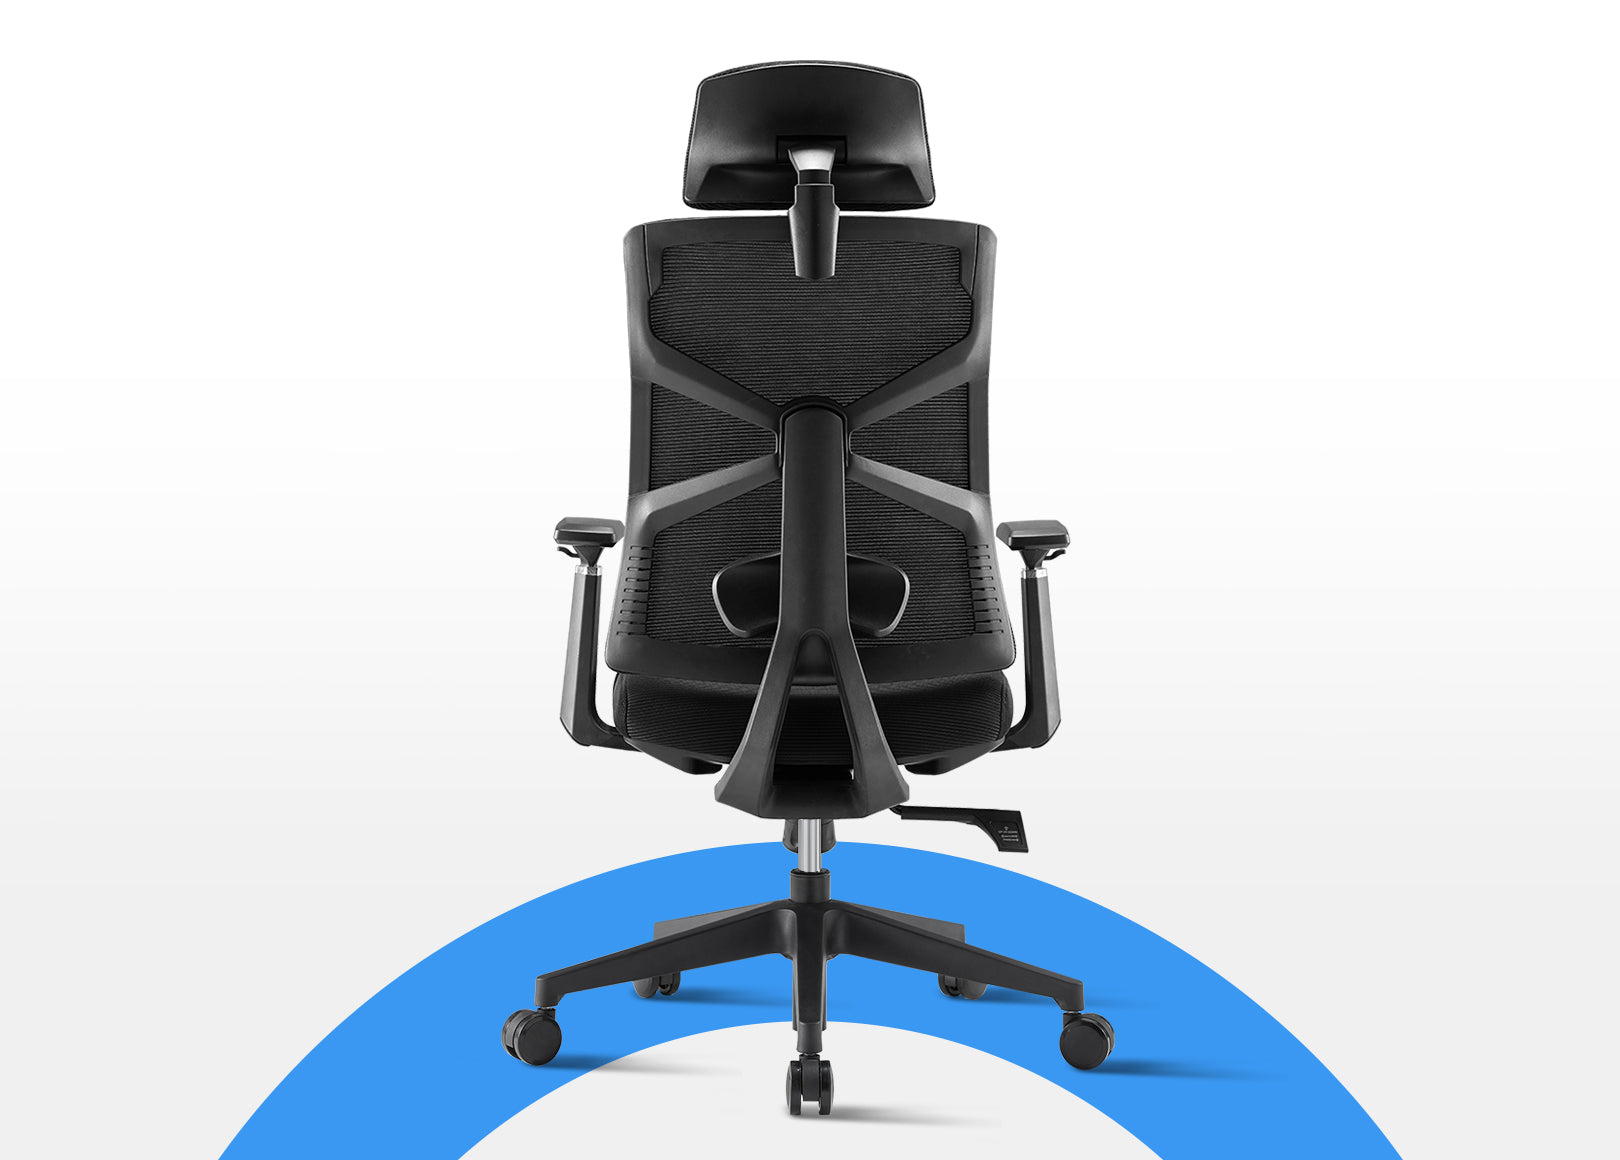 Black Voyager Pro Ergonomic Task Chair with 3D Armrests, Lockable Backrest and Study Backrest for Optimal Comfort